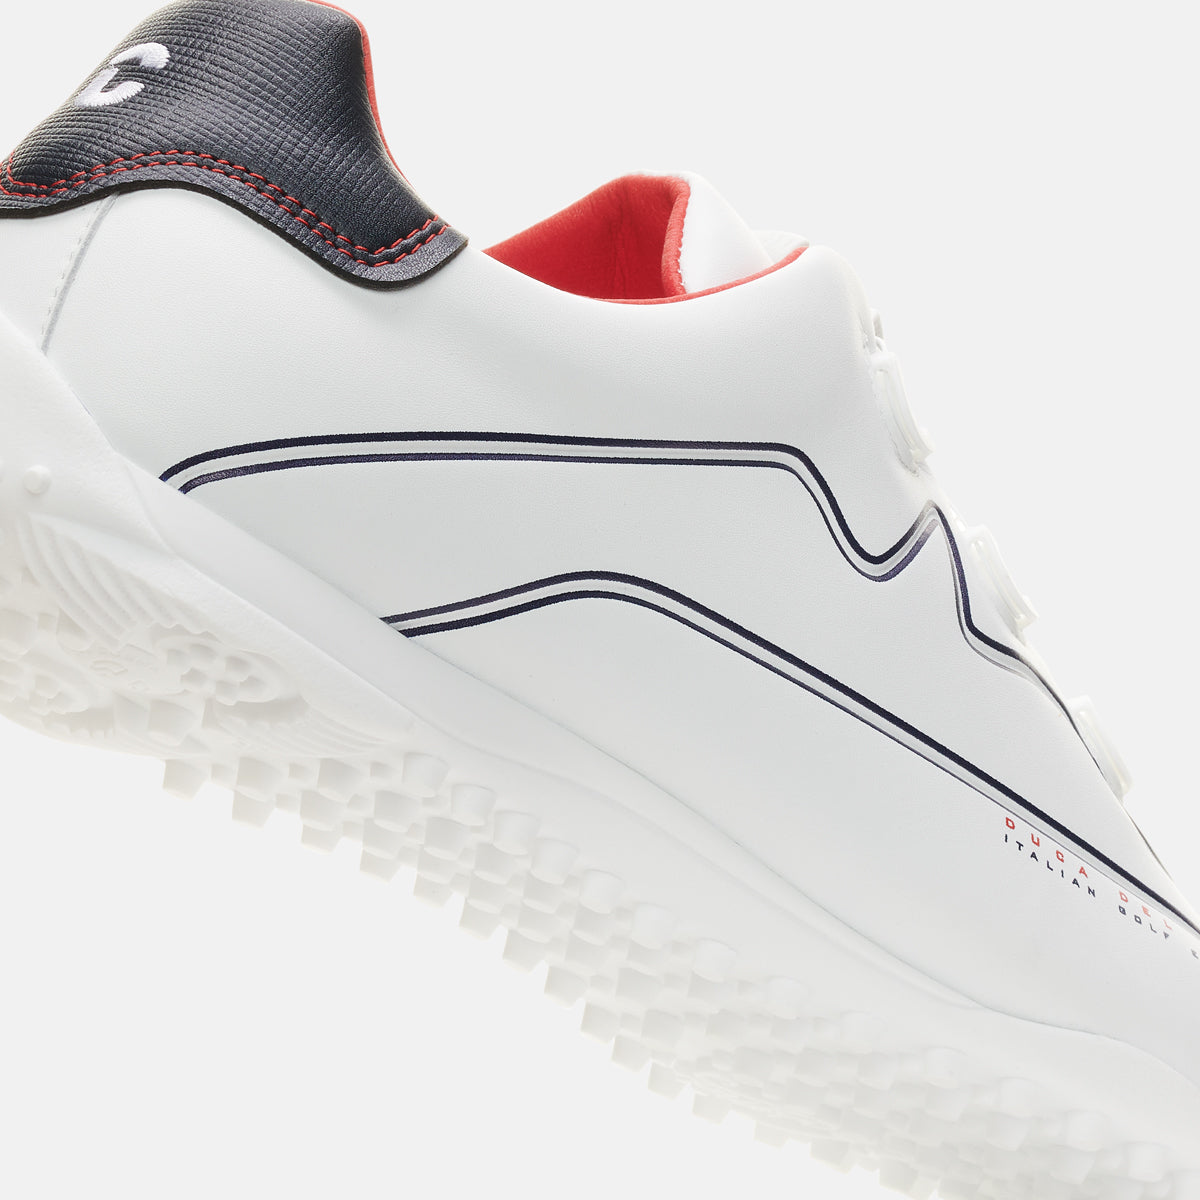 Navarino white men's golf shoe maximum waterproofness and grip with BOA system